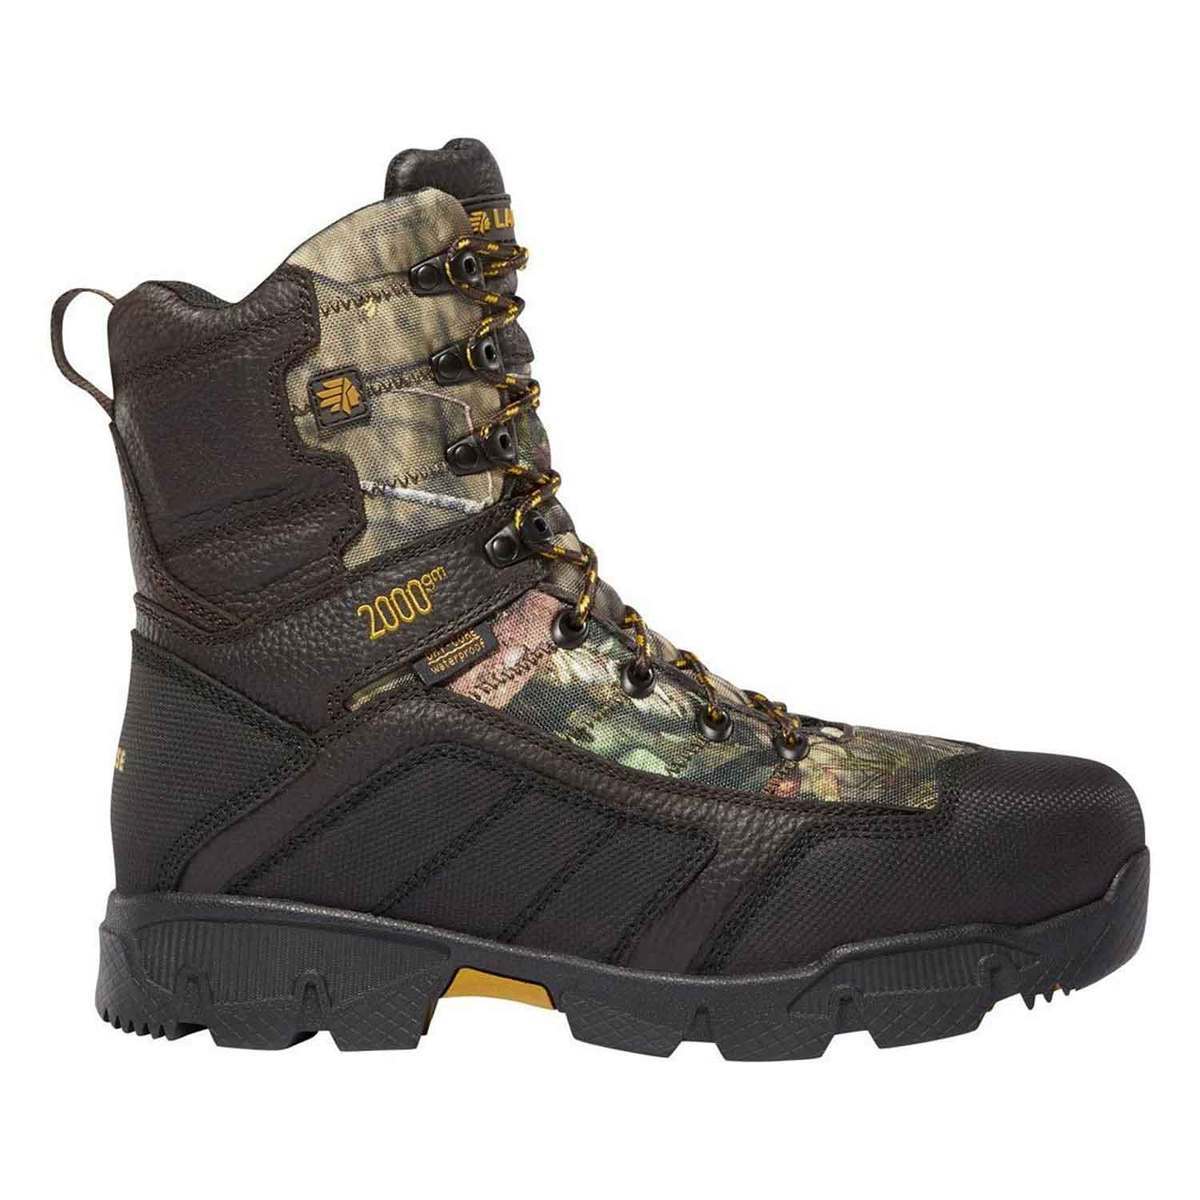 https://www.sportsmans.com/medias/lacrosse-footwear-mens-2000g-thinsulate-waterproof-hunting-boots-mossy-oak-break-up-country-size-10-1500515-1.jpg?context=bWFzdGVyfGltYWdlc3wxMDEyMjB8aW1hZ2UvanBlZ3xpbWFnZXMvaGNjL2hmMy85NzIwMTU2MjI1NTY2LmpwZ3w4OTA3Y2U1MTdkMDJkODRhOGQ0MmI5MjZjOTg5YmFiZTA5NjdlZTcyODY2YjU1Mzk0YTMyZmQ4MDVmMTg5ZWMy